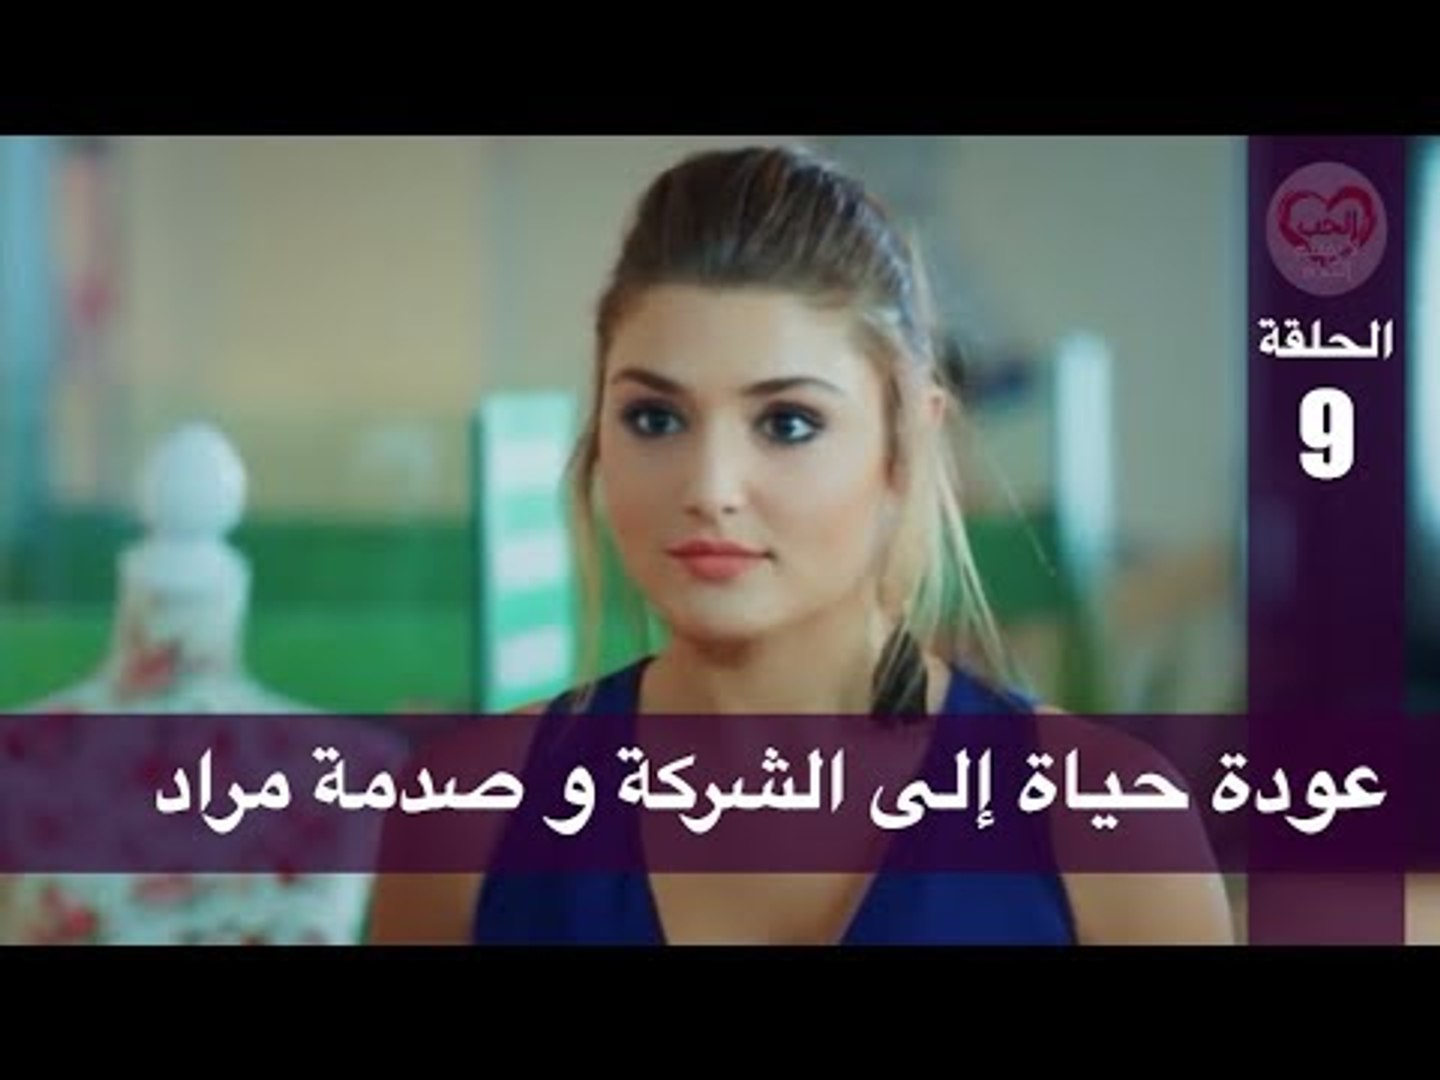 مسلسل حياة ومراد الحلقة 1 مدبلج عربي